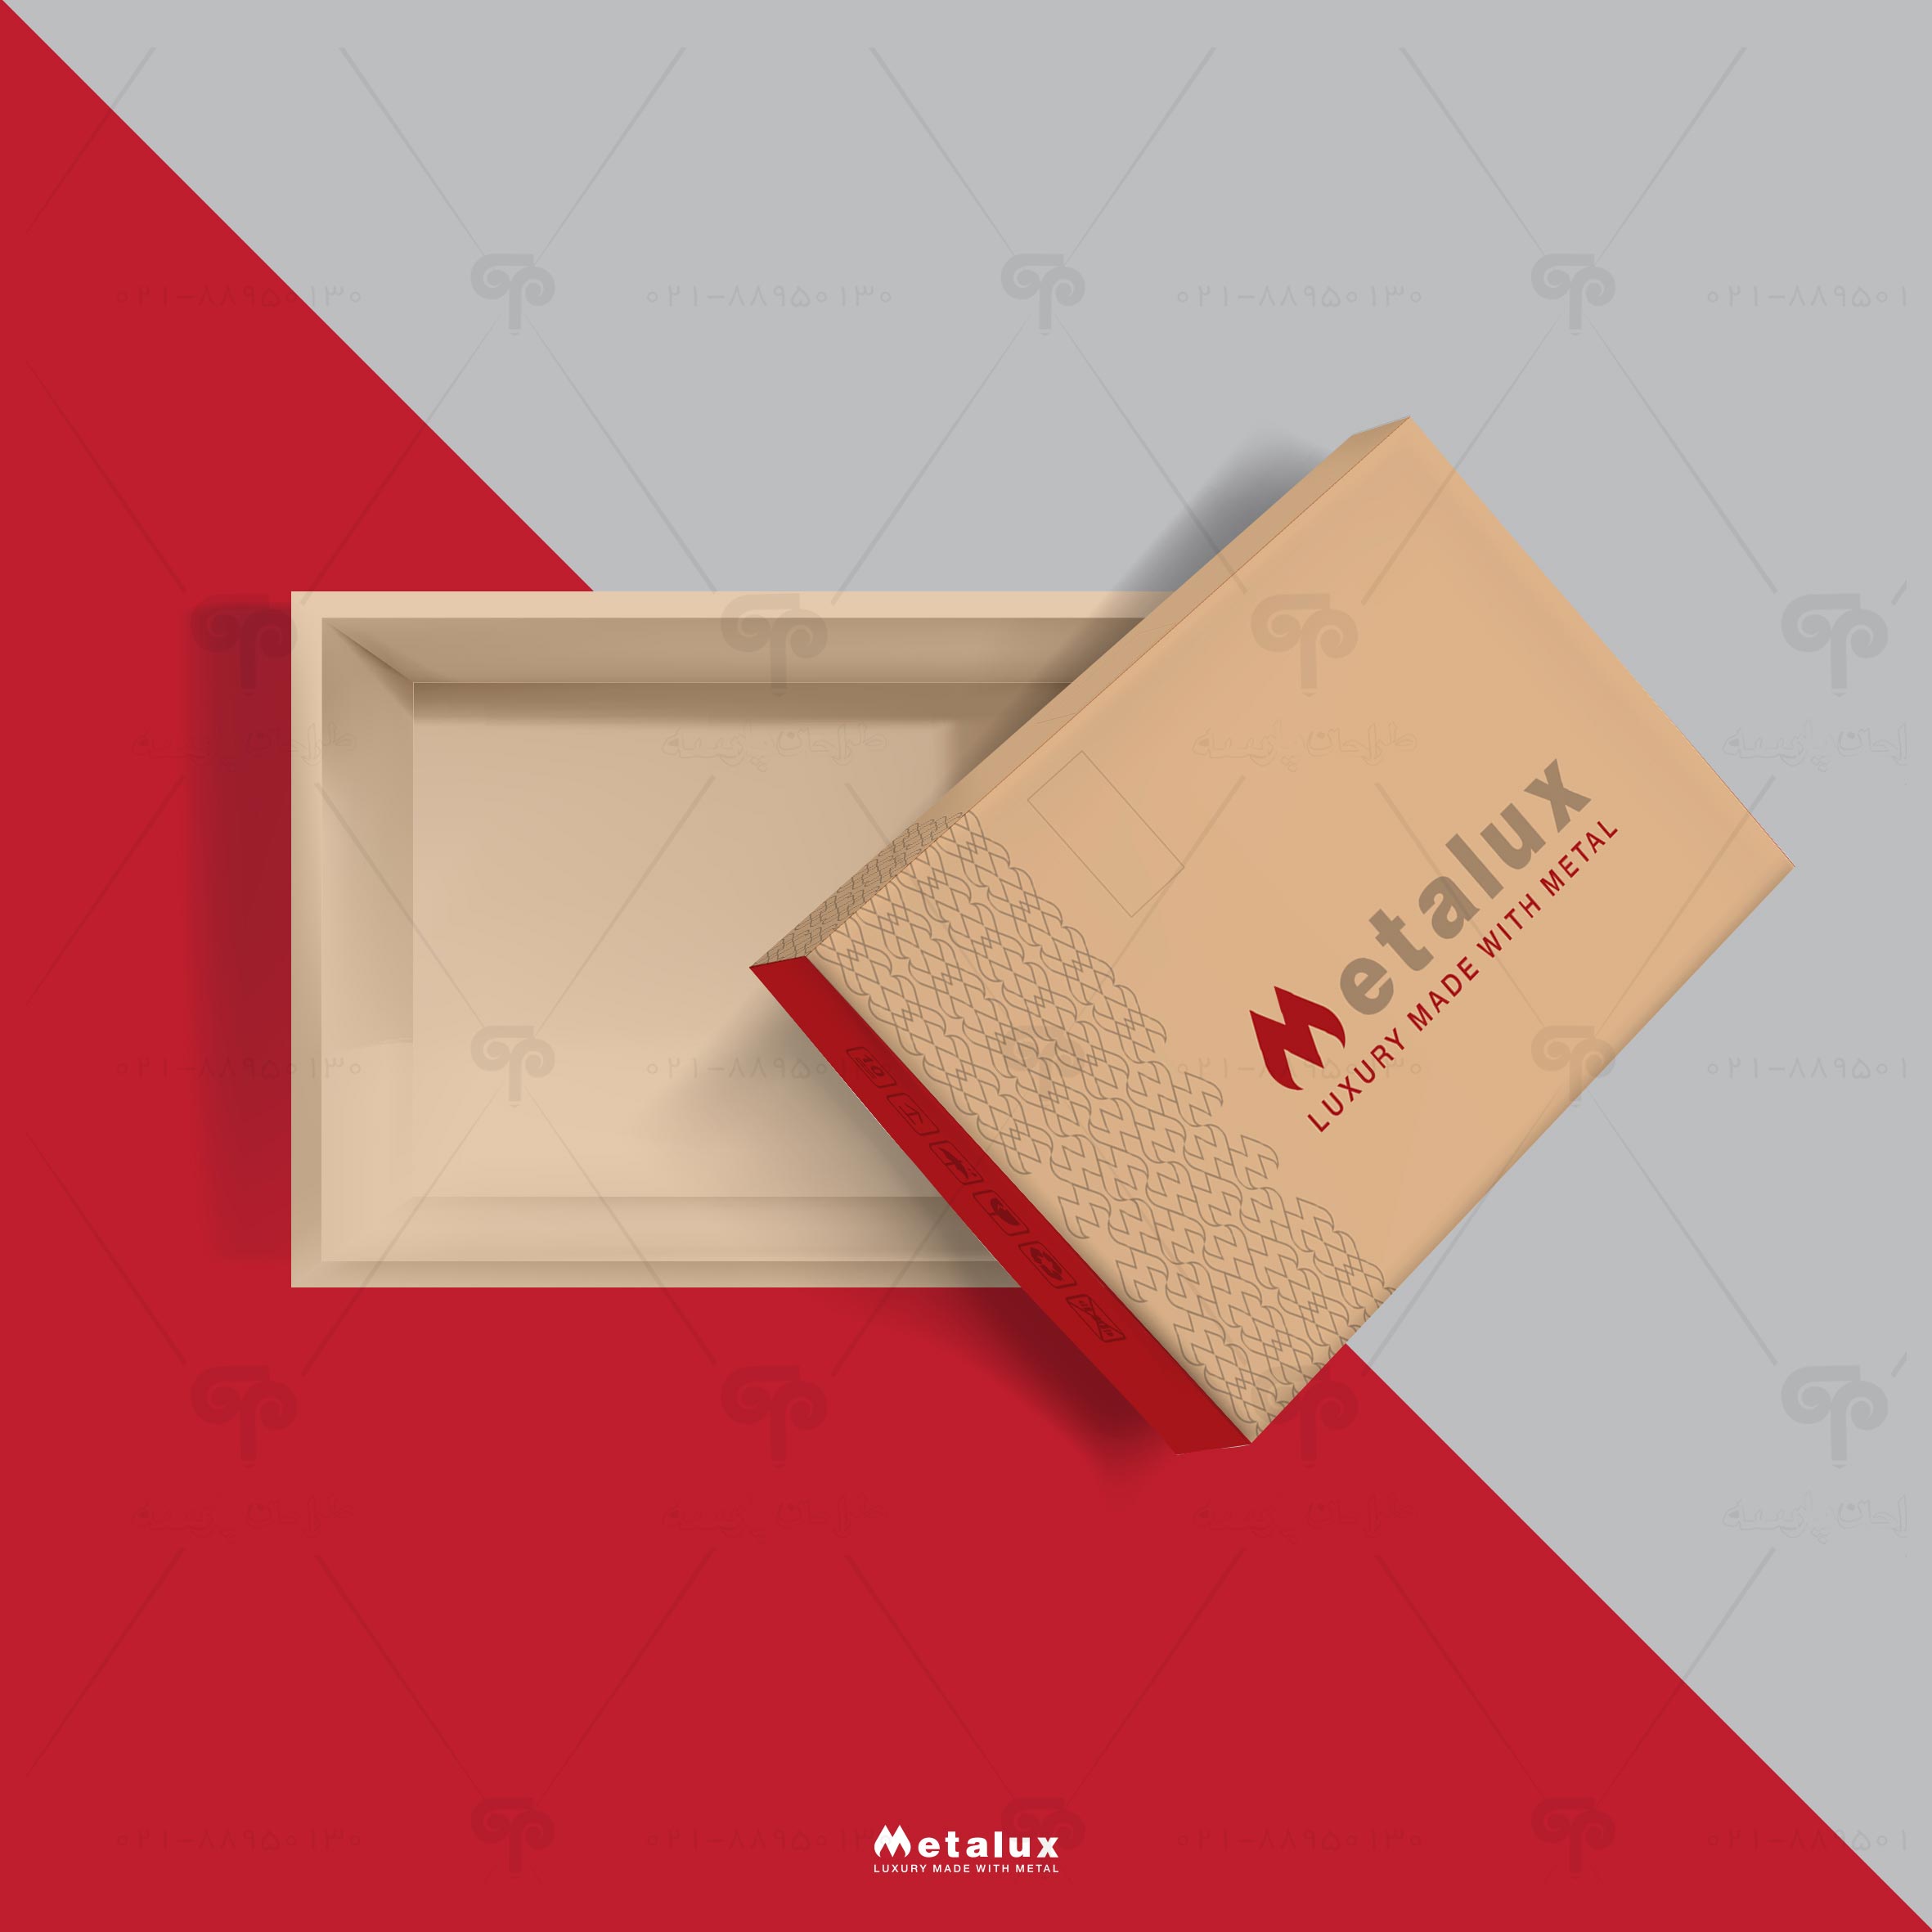 طراحی جعبه و بسته بندی شرکت متالوکس